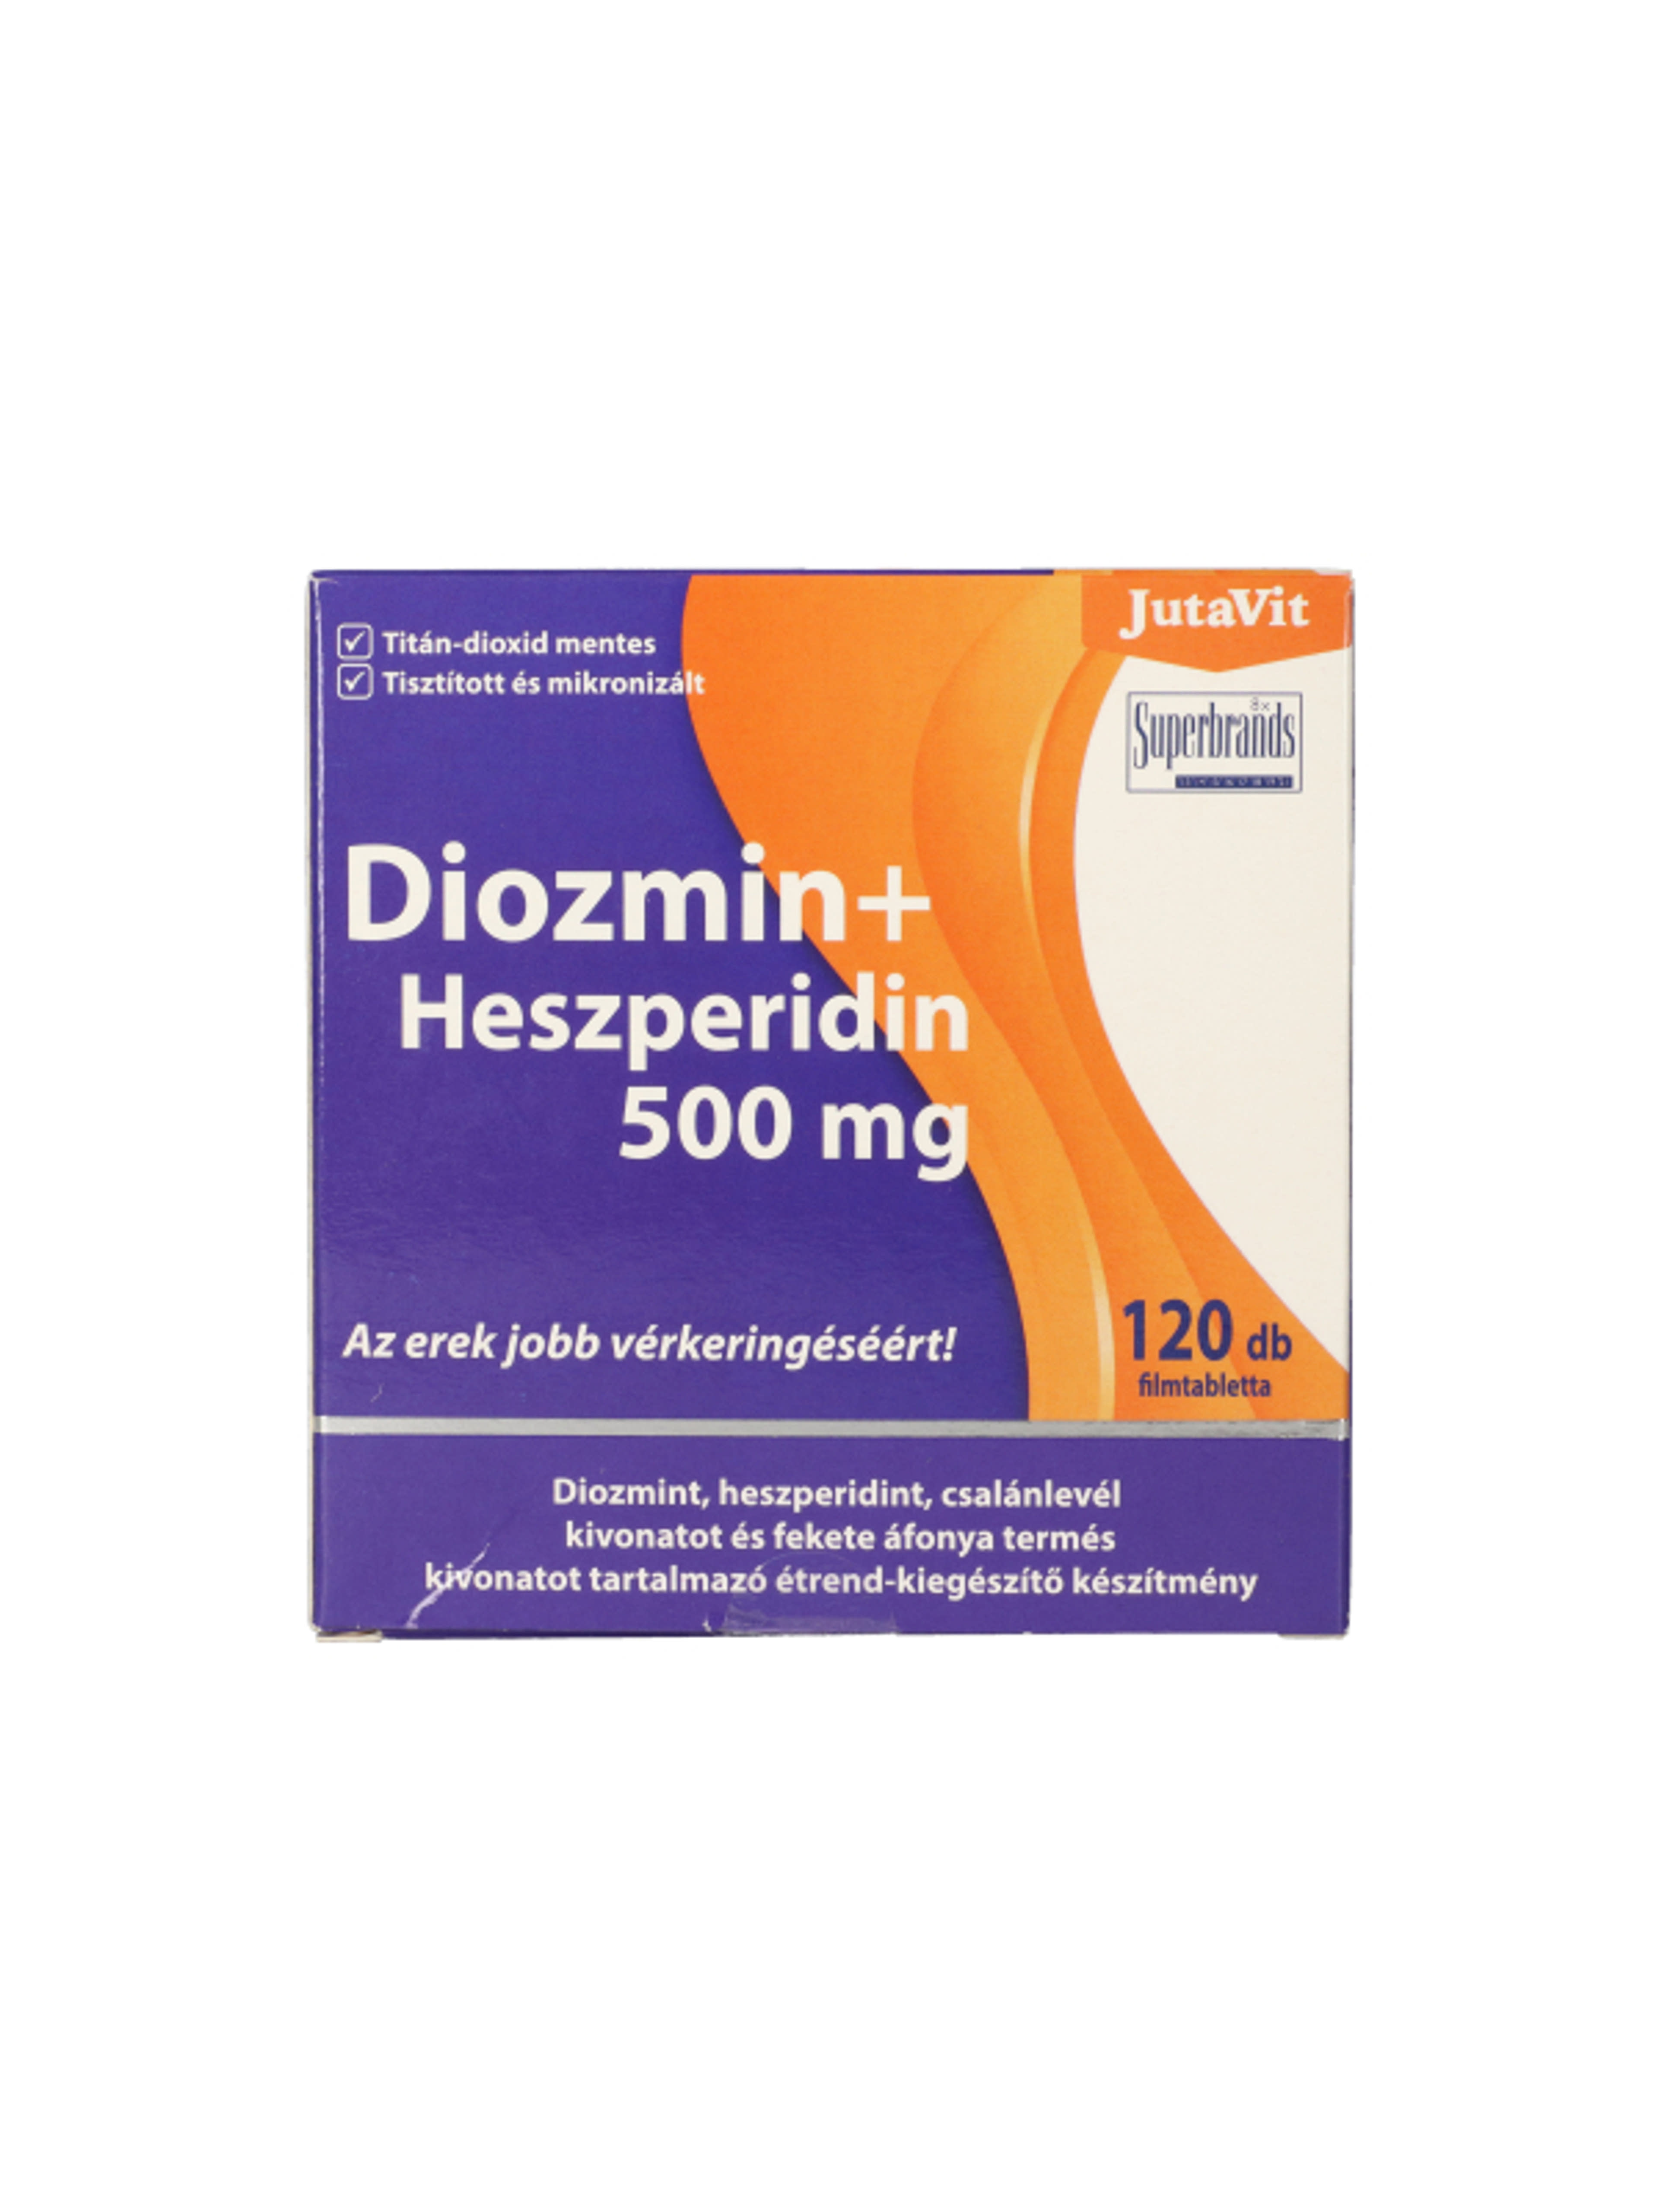 JutaVit Diozmin + Heszperidin tabletta, 500 mg - 120 db